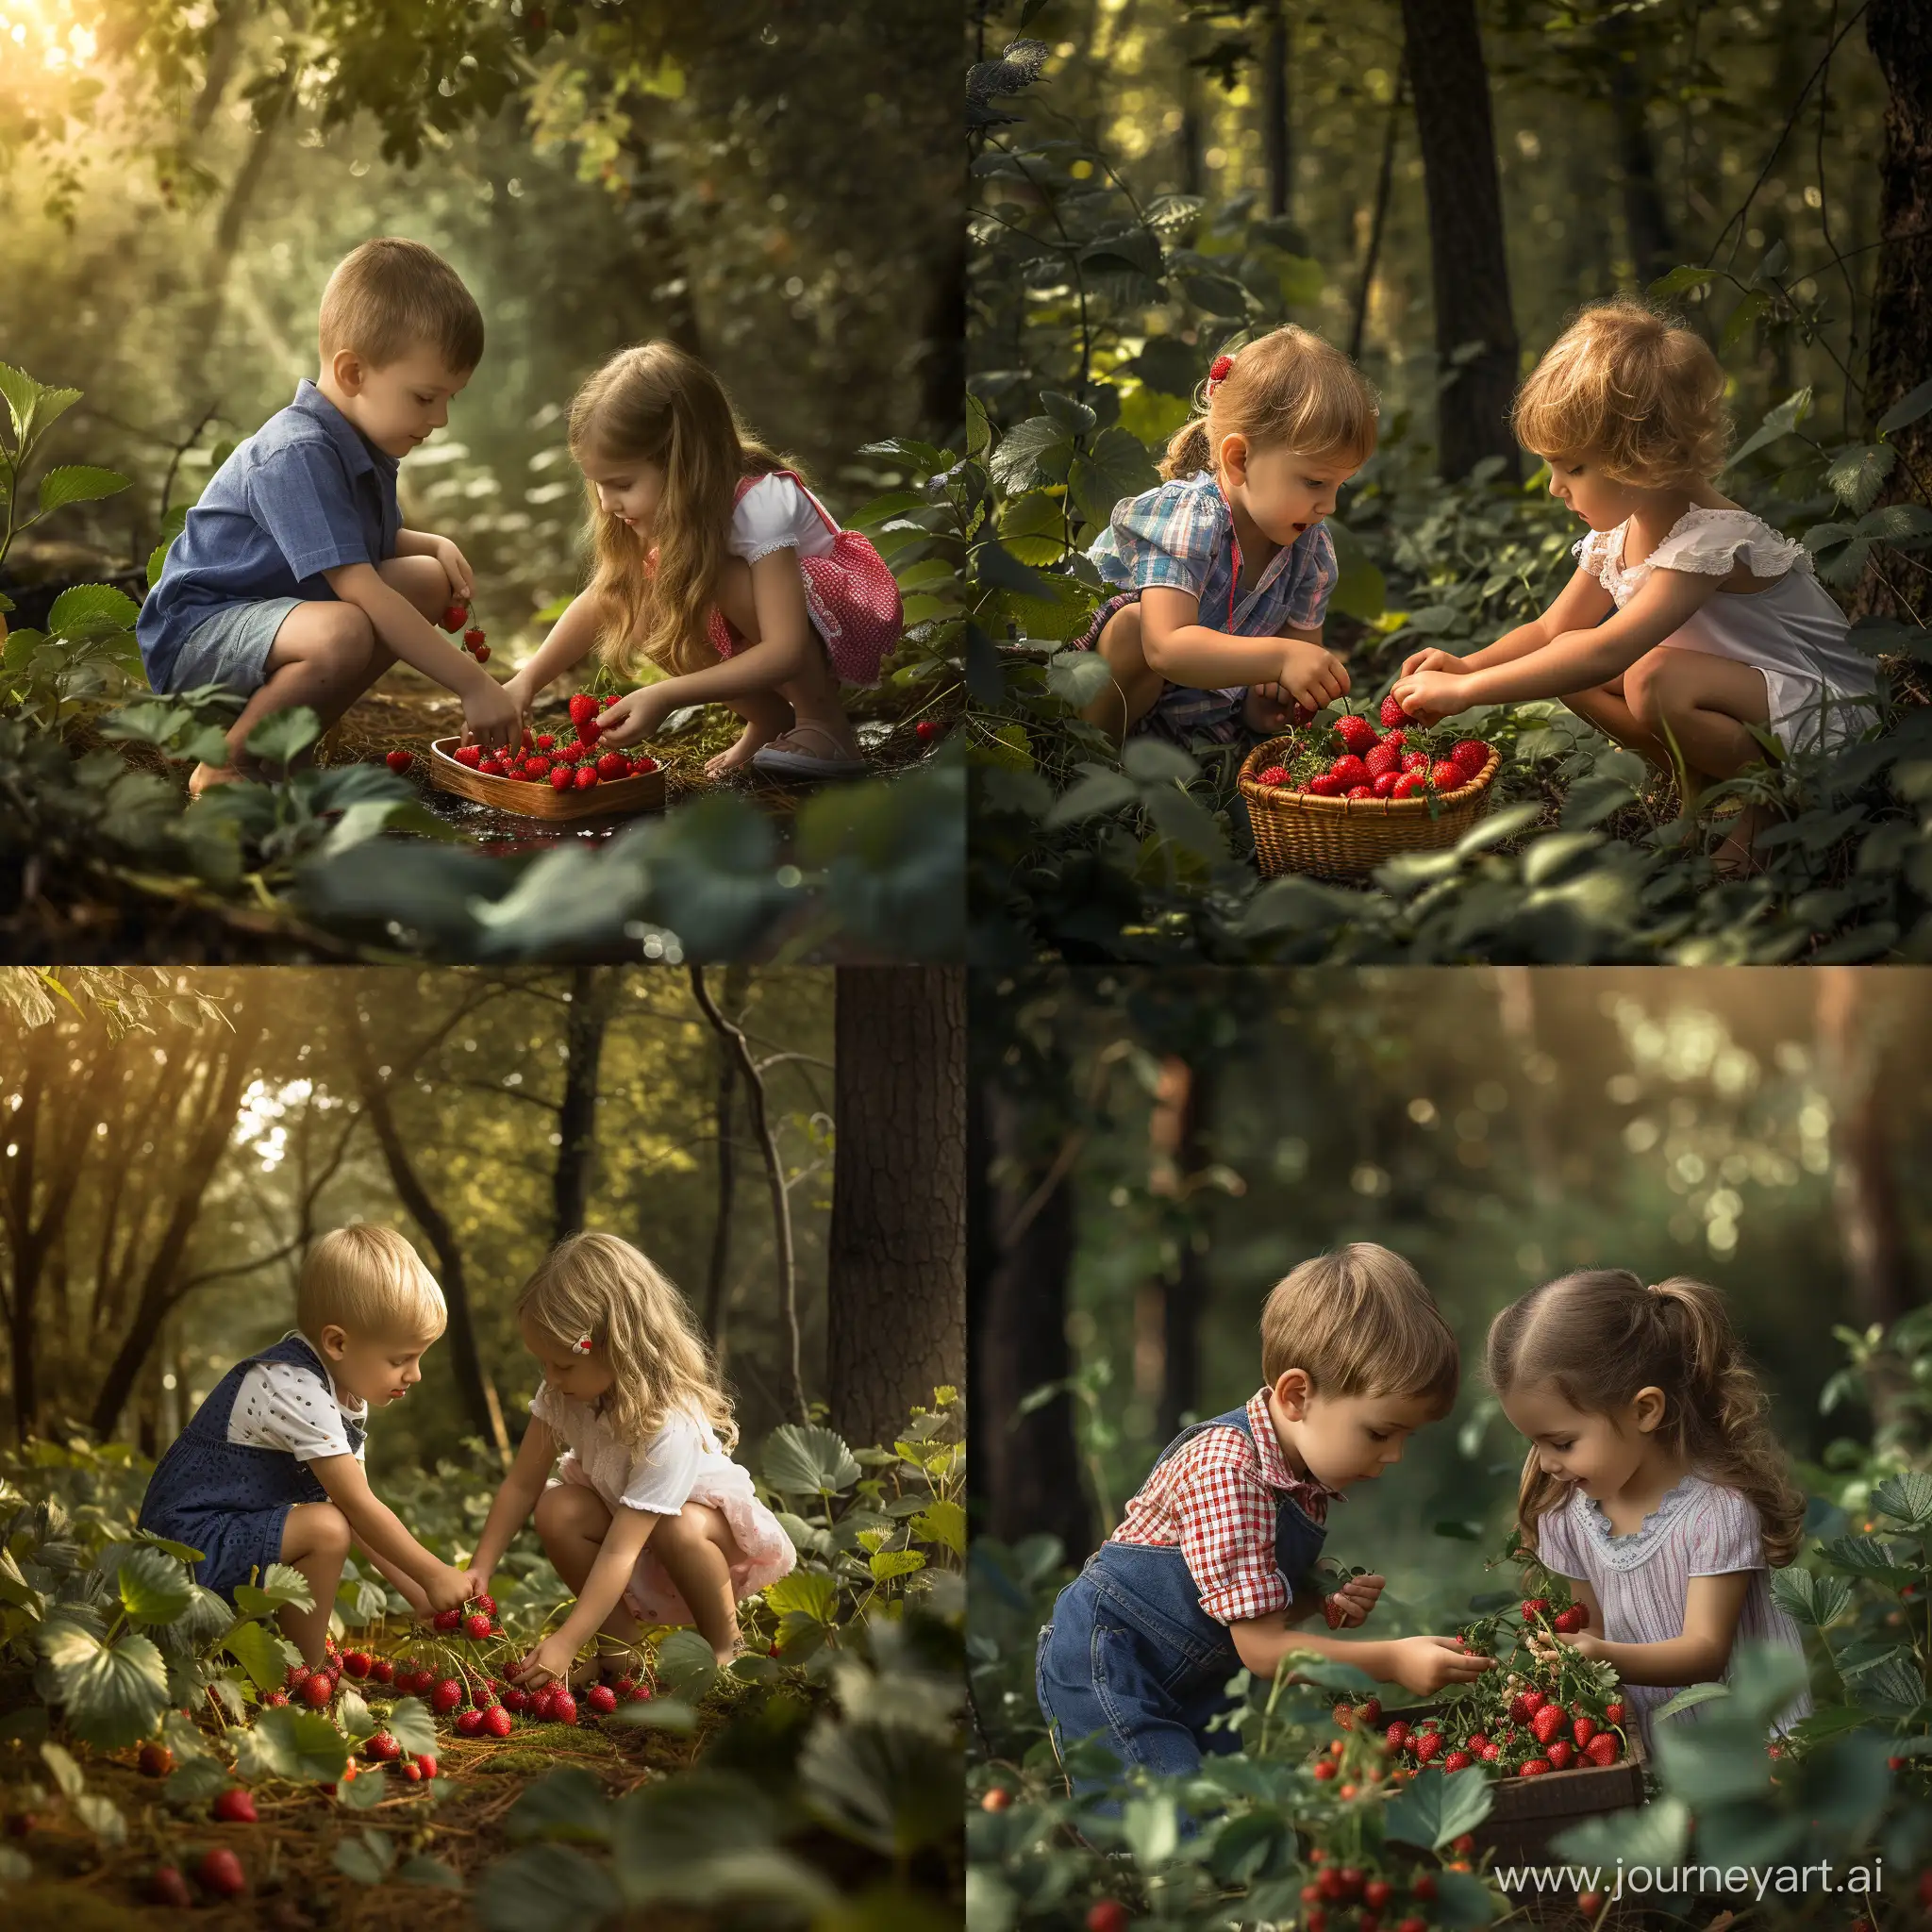 Joyful-Children-Harvesting-Fresh-Strawberries-in-Enchanting-Summer-Forest